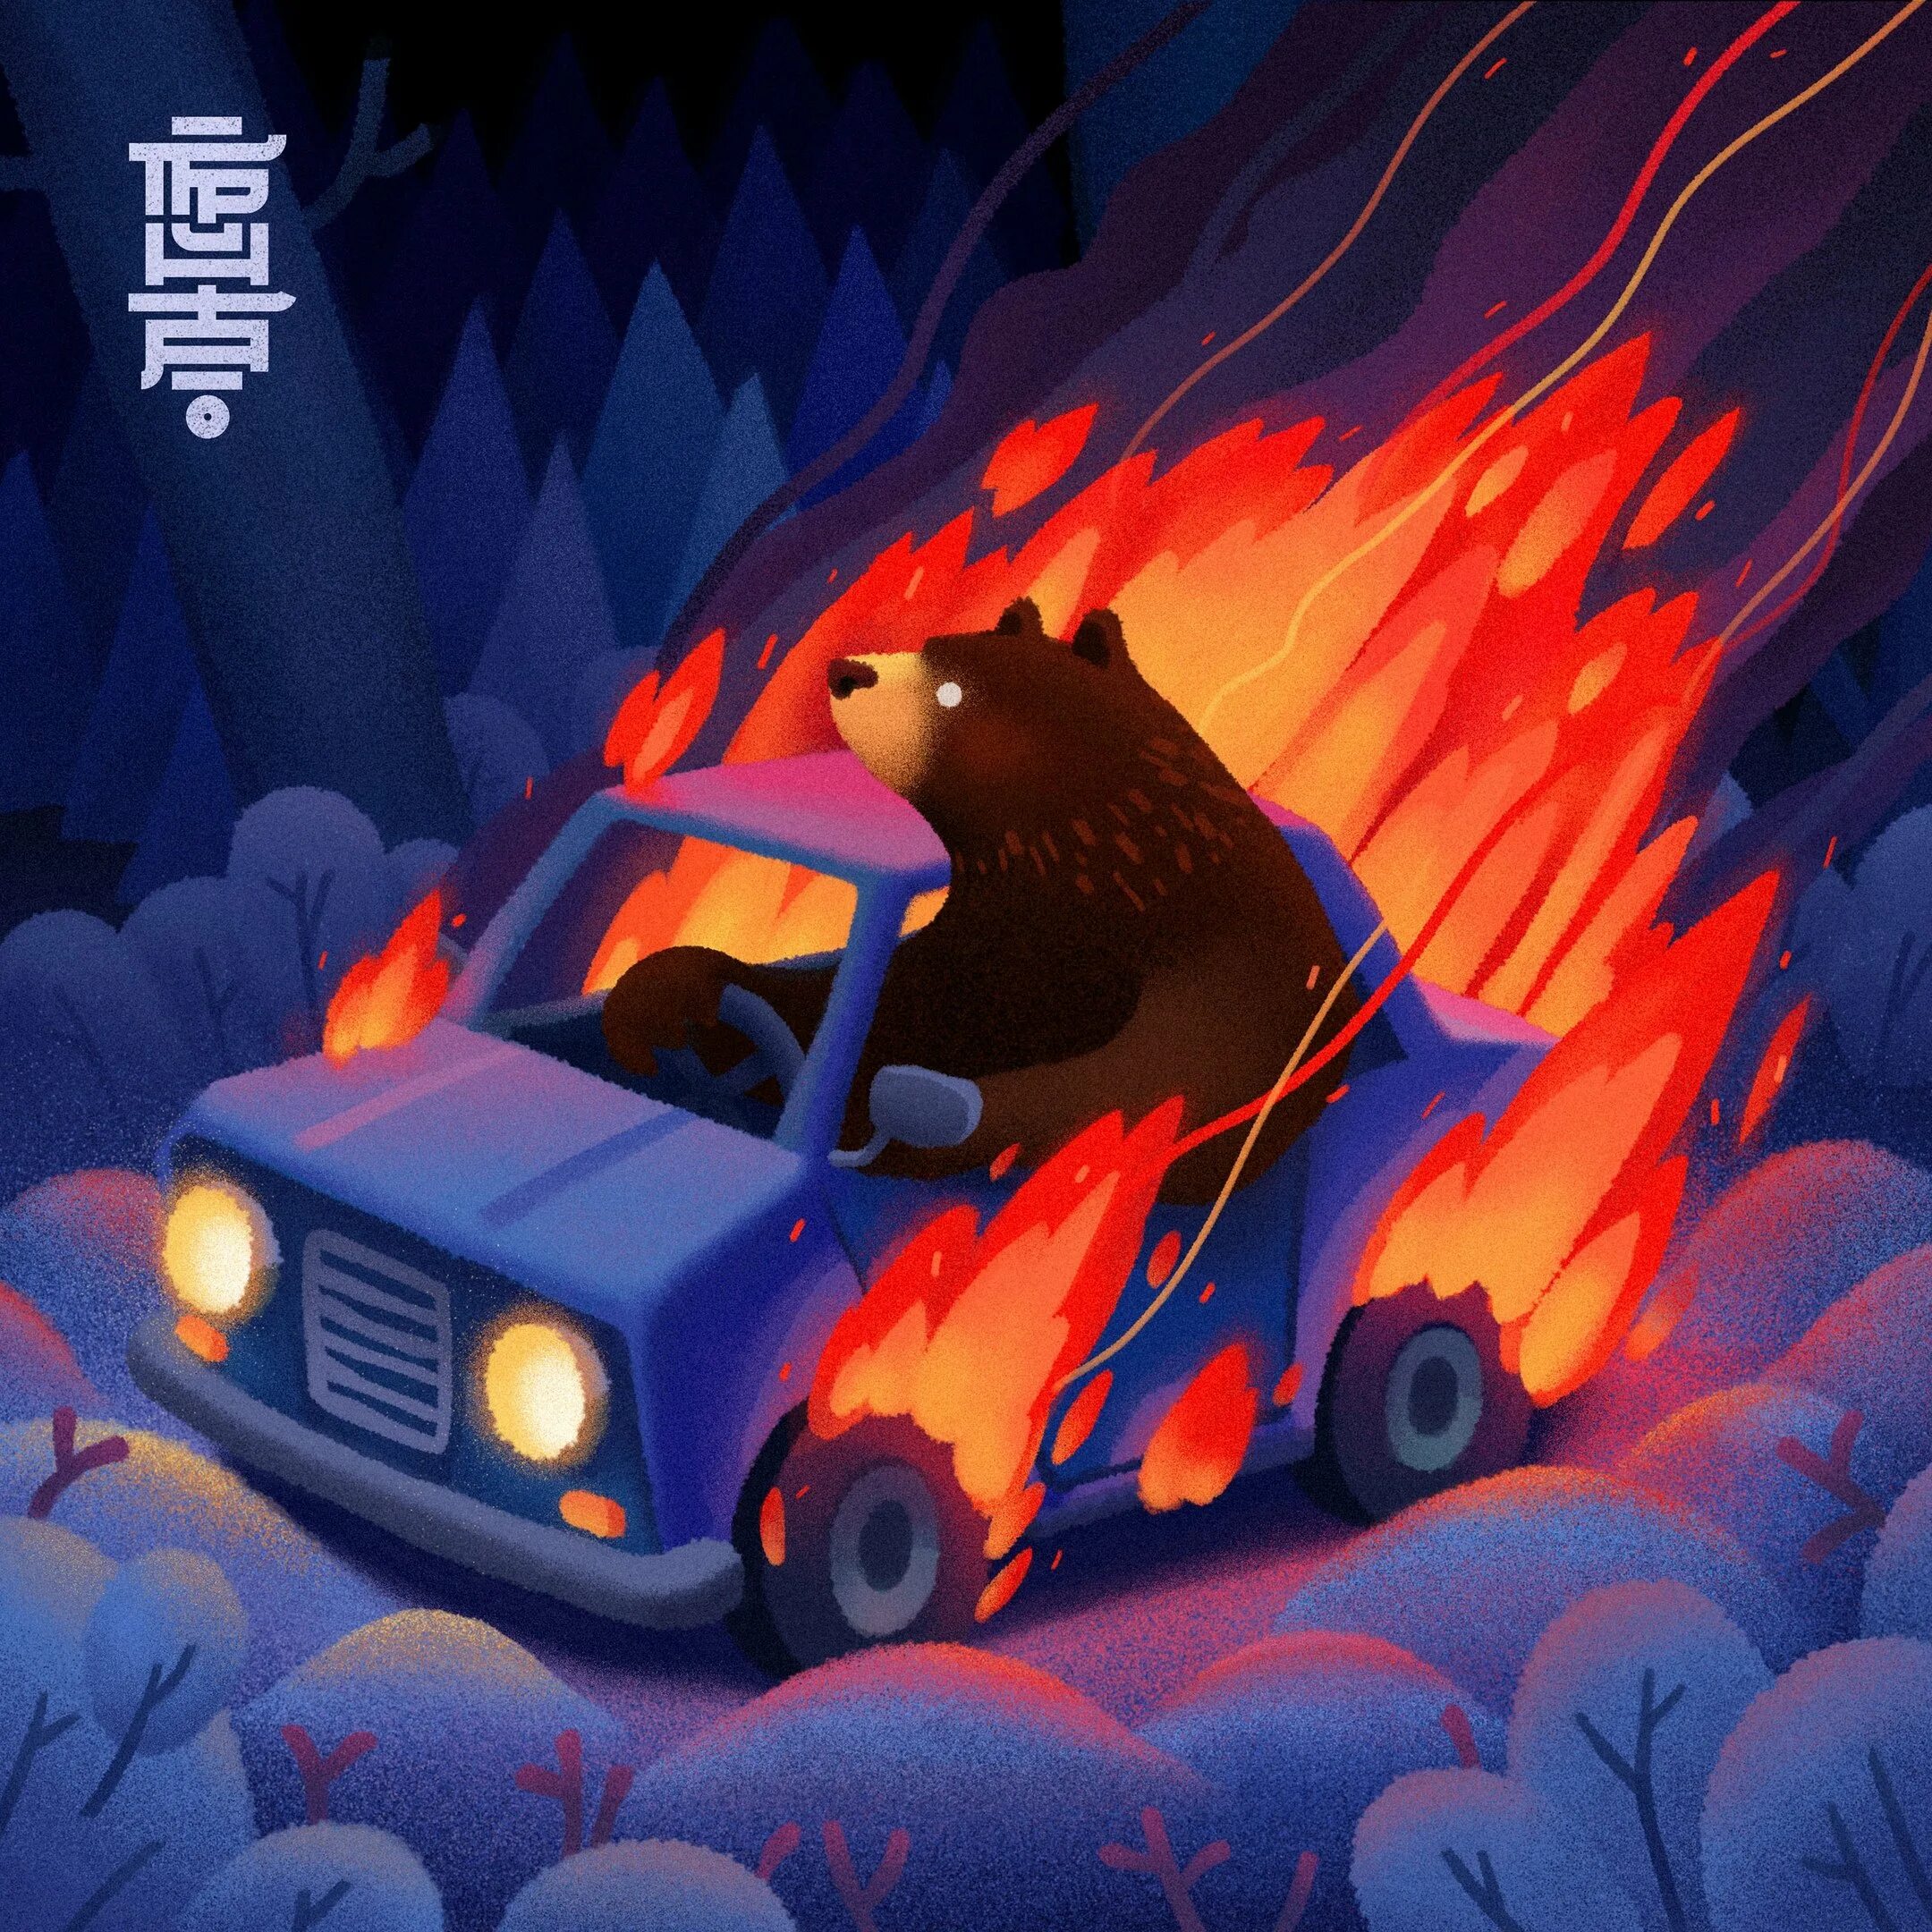 Медведь и горящий автомобиль. Горящий медведь в машине. Медведь сгорел в машине. Медведь горит. Видит медведь горящую машину